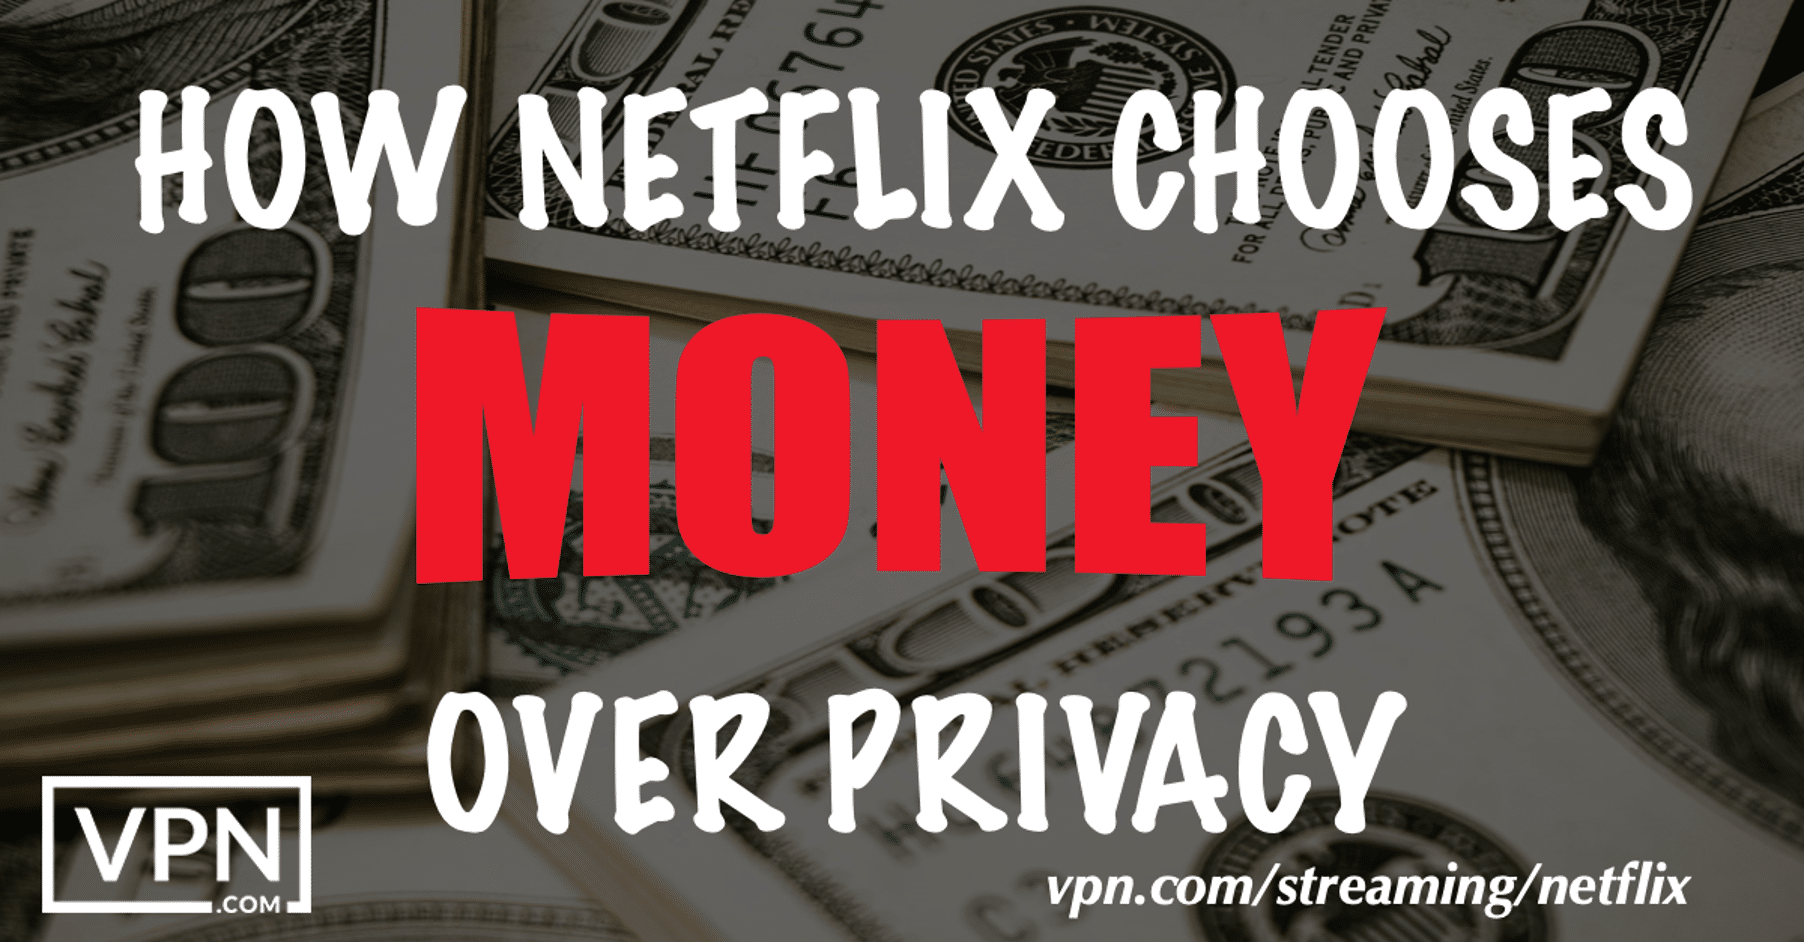 Netflixがプライバシーよりもお金を選ぶ理由。